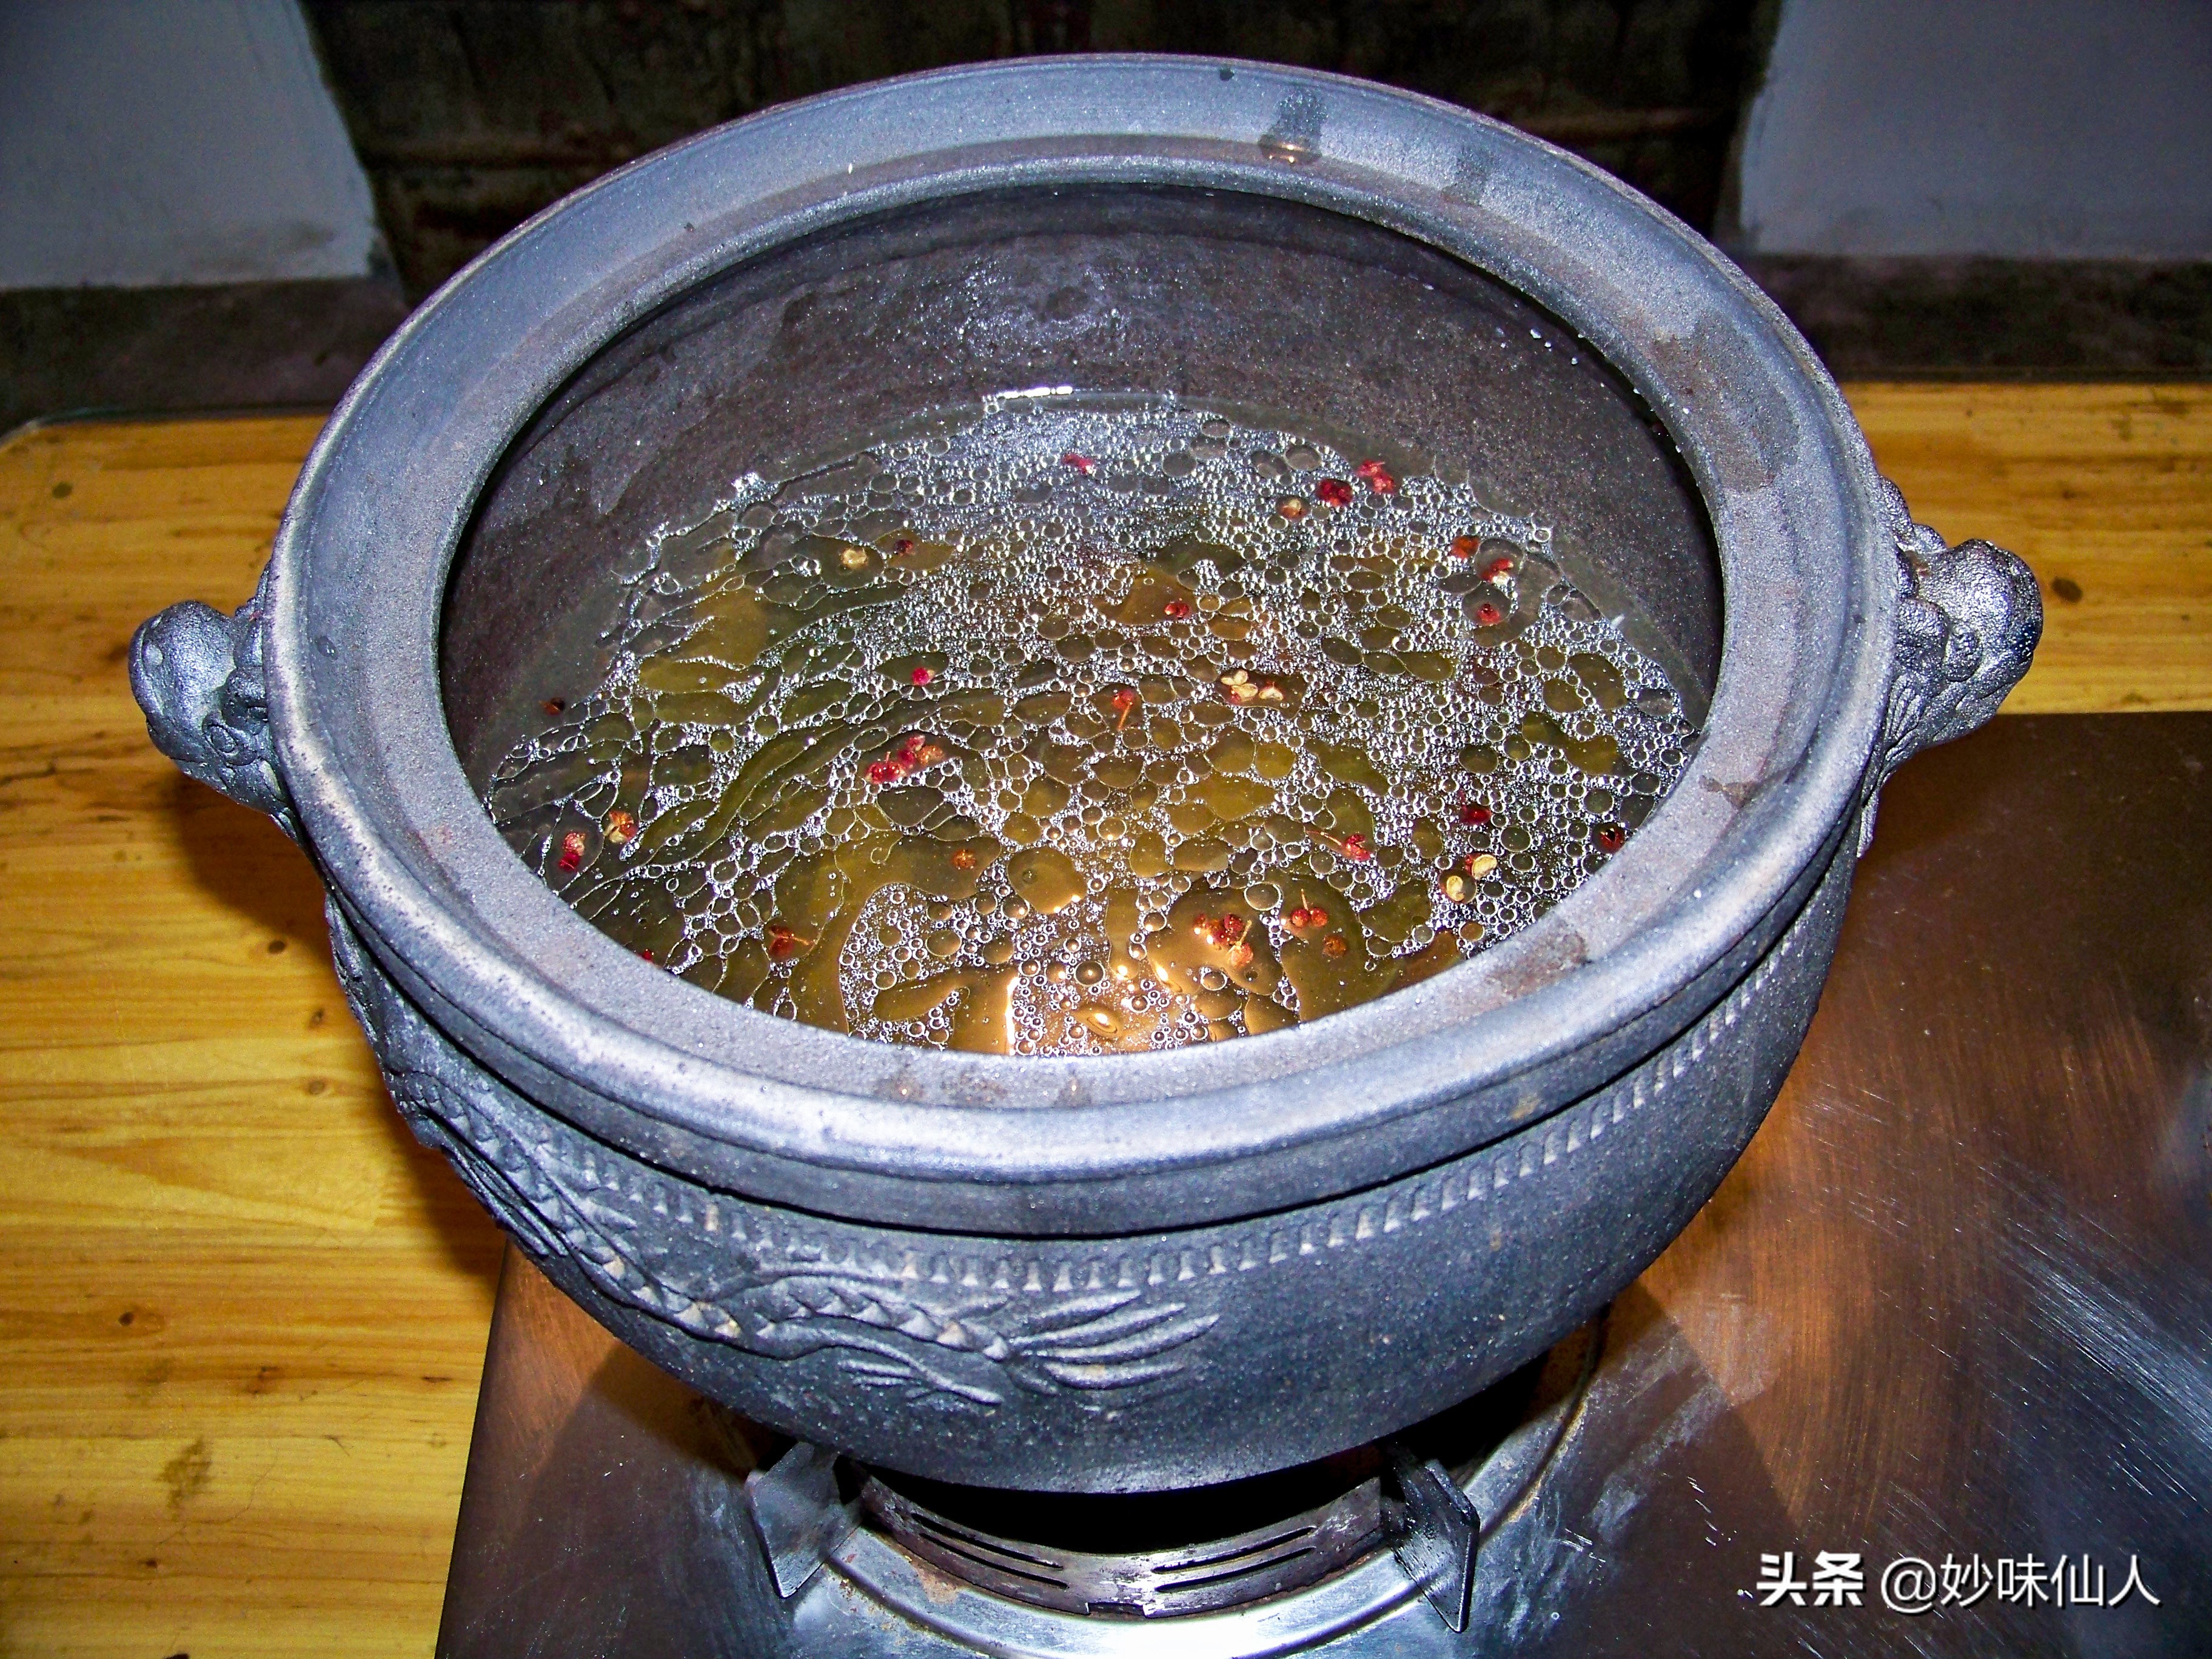 排骨浓汤丨煨一锅暖汤，煮一壶薄酒，数岁月悠悠，守余生漫长